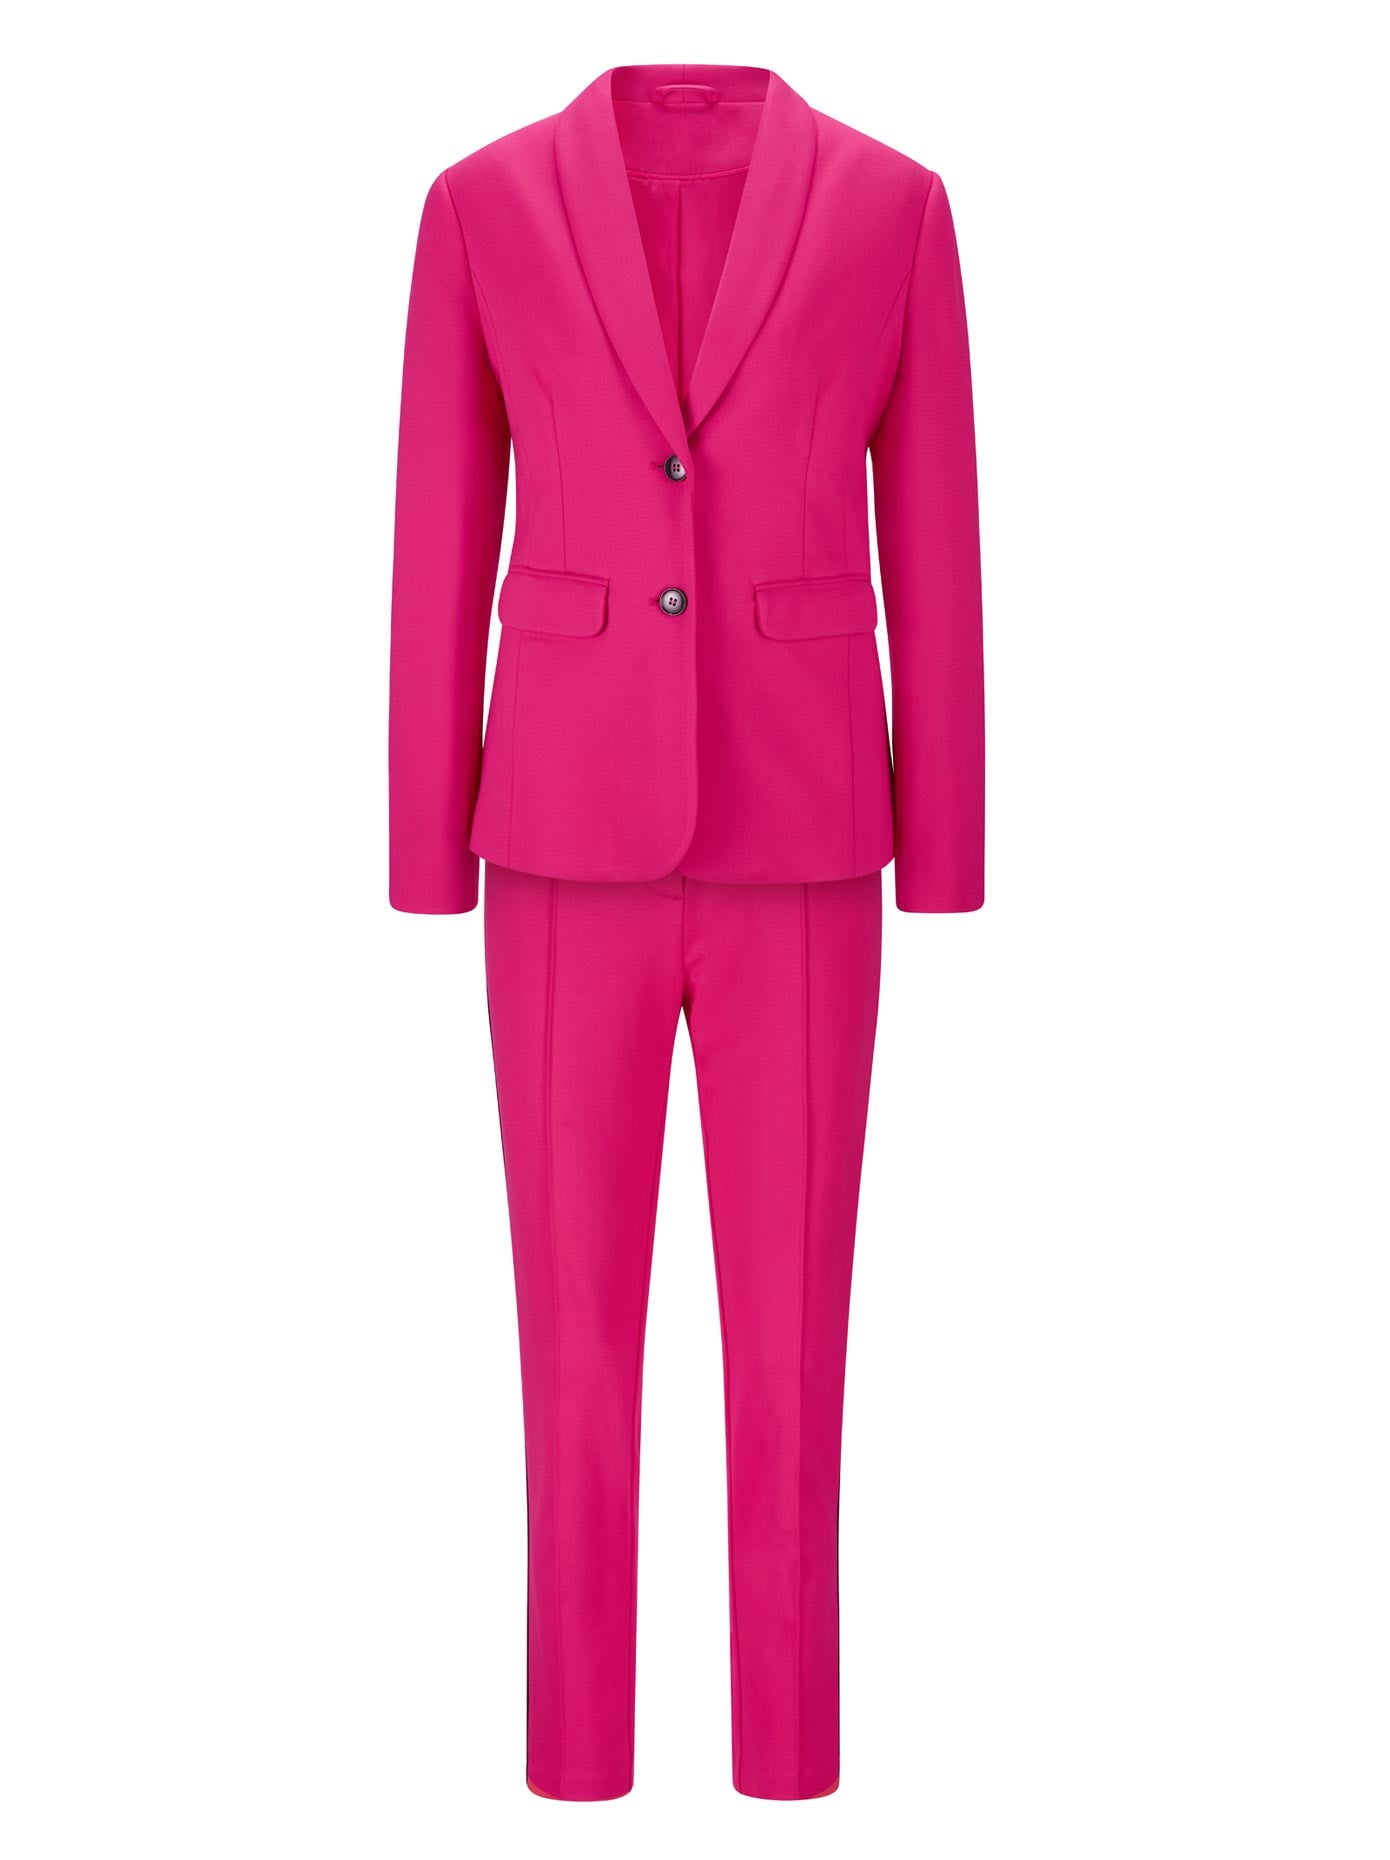 Hot Pink Blazer Hosenanzug für Frauen, rosa Hosenanzug für Frauen,  3-teiliger Hosenanzug für Frauen, Womens Formal Wear -  Schweiz